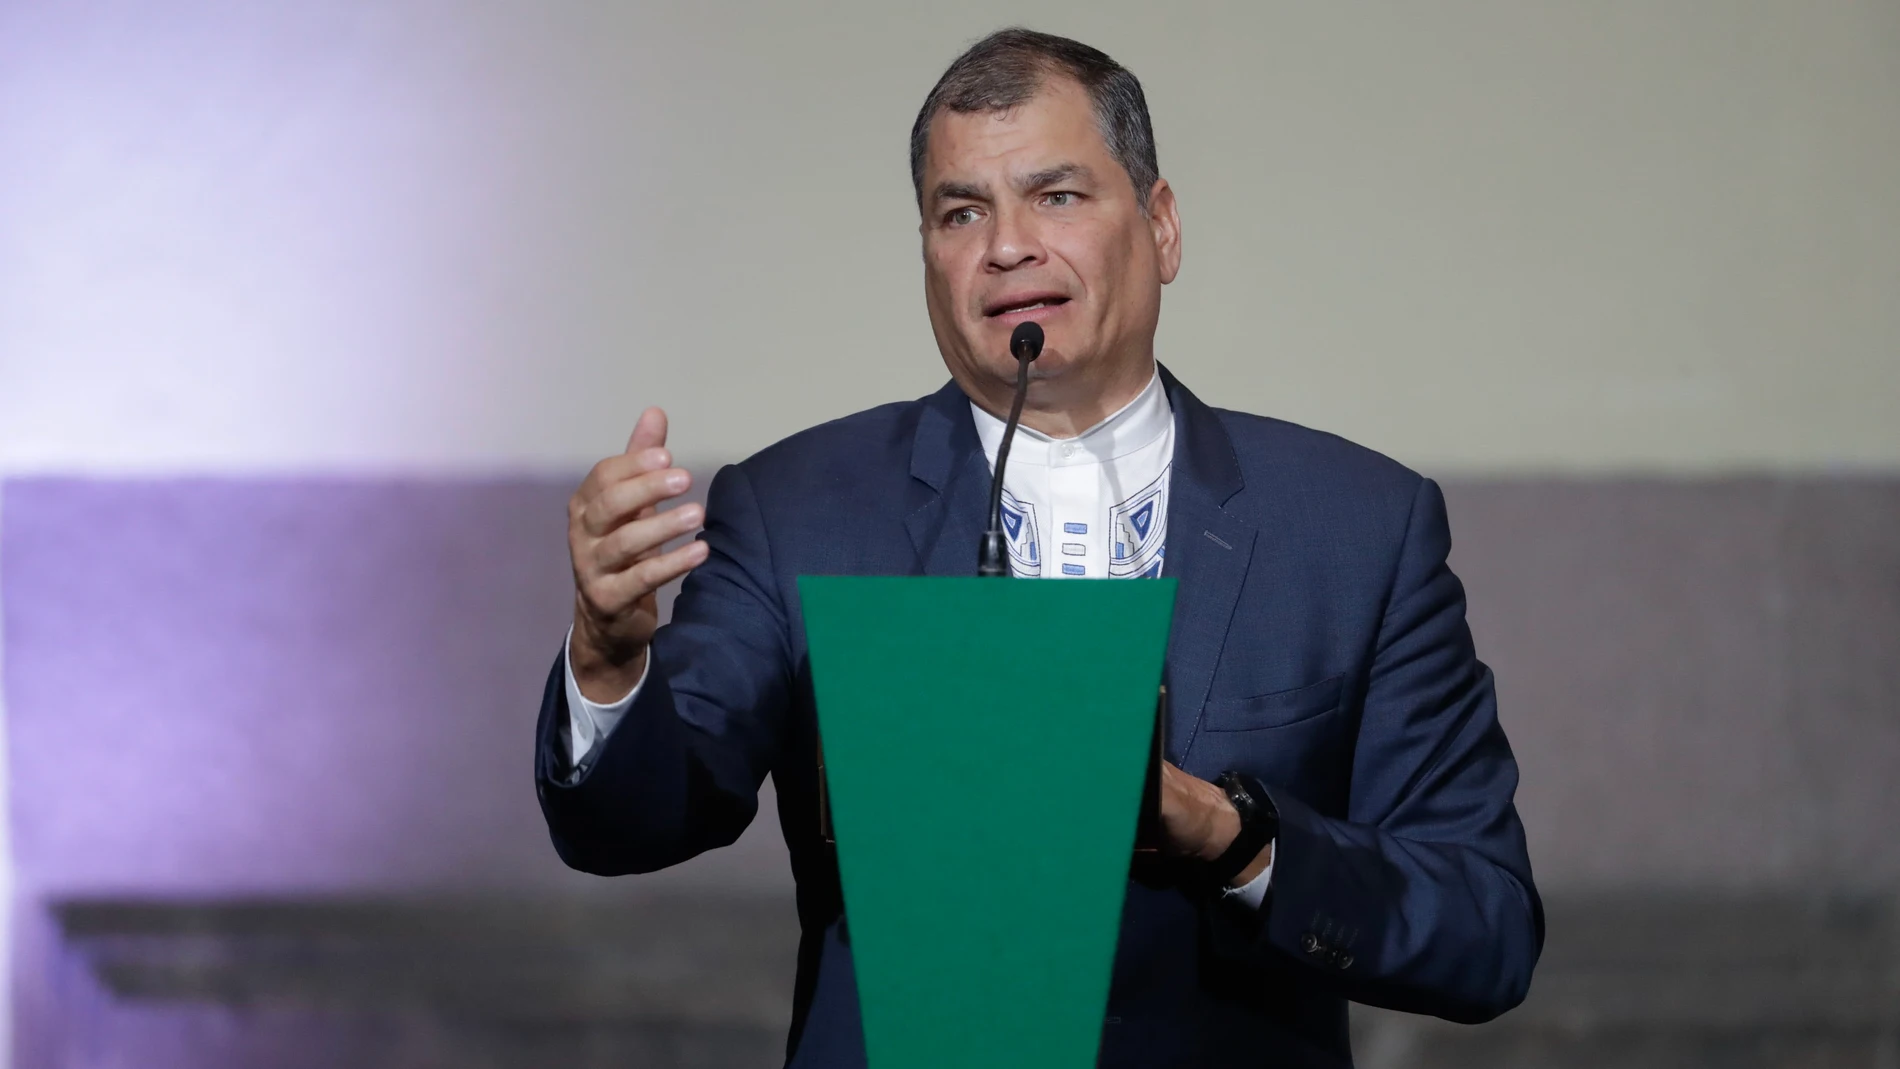 El ex presidente Rafael Correa fue condenado en ausencia en julio a ocho años de prisión